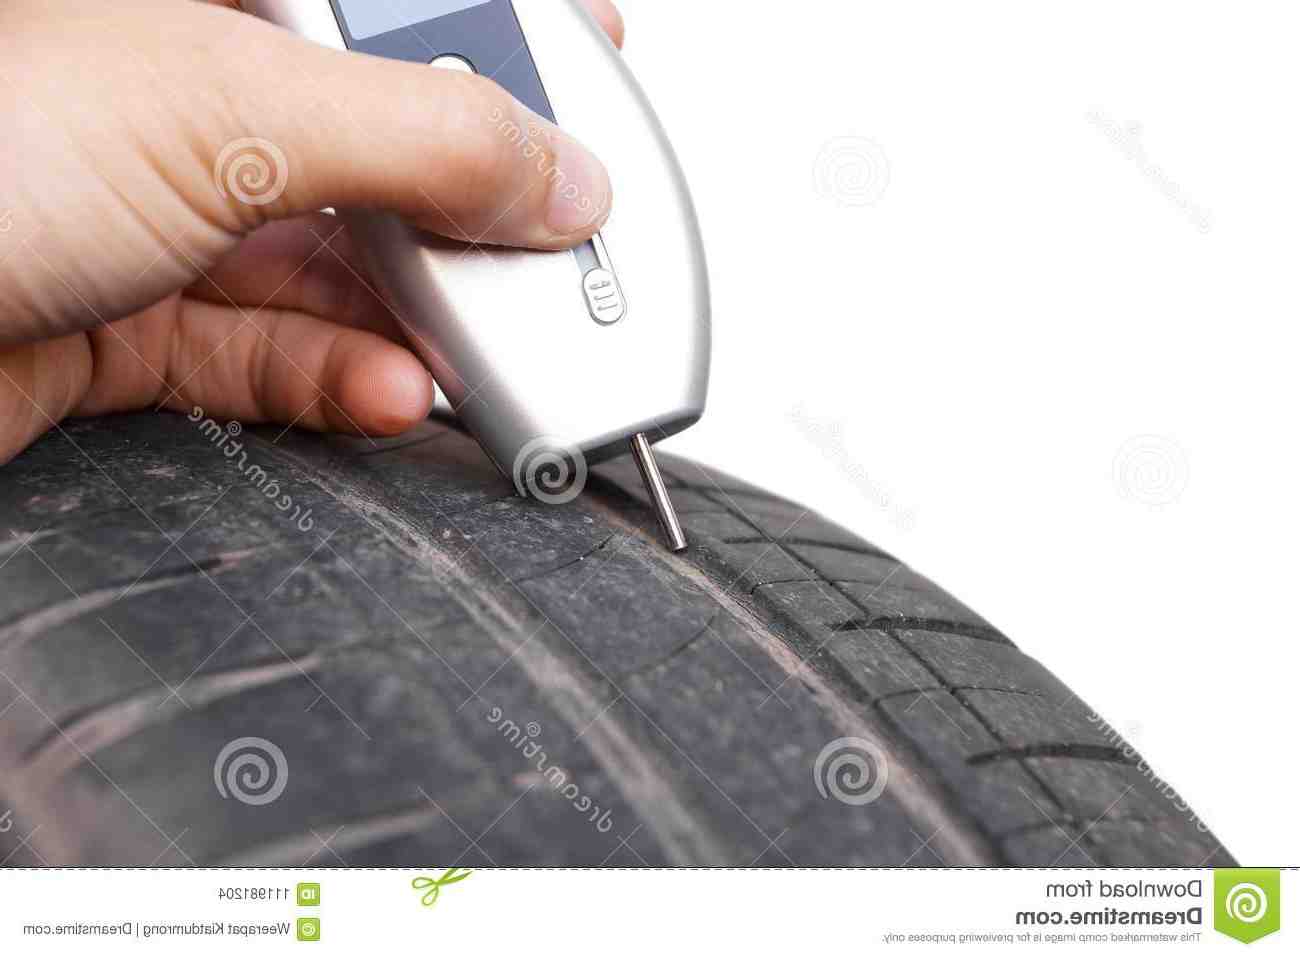 Comment lire les dimensions d'un pneu?